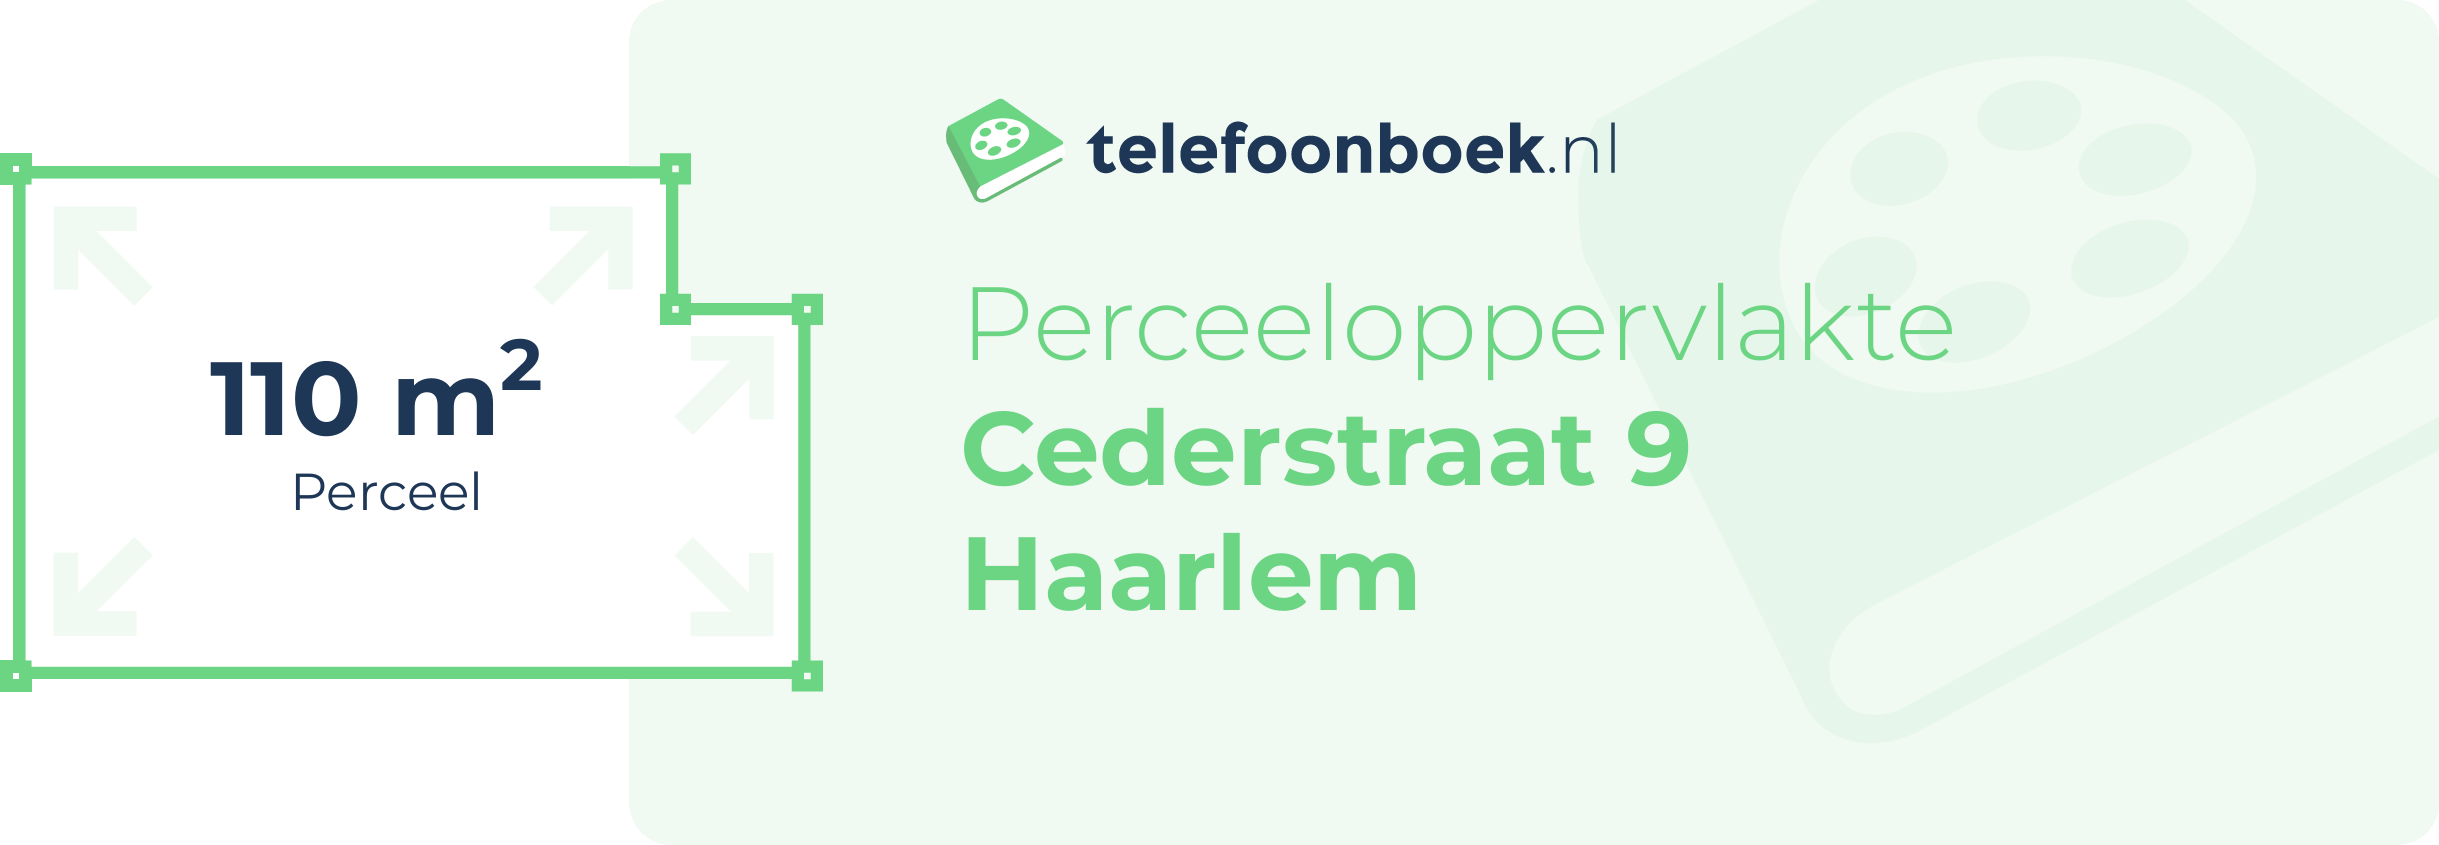 Perceeloppervlakte Cederstraat 9 Haarlem